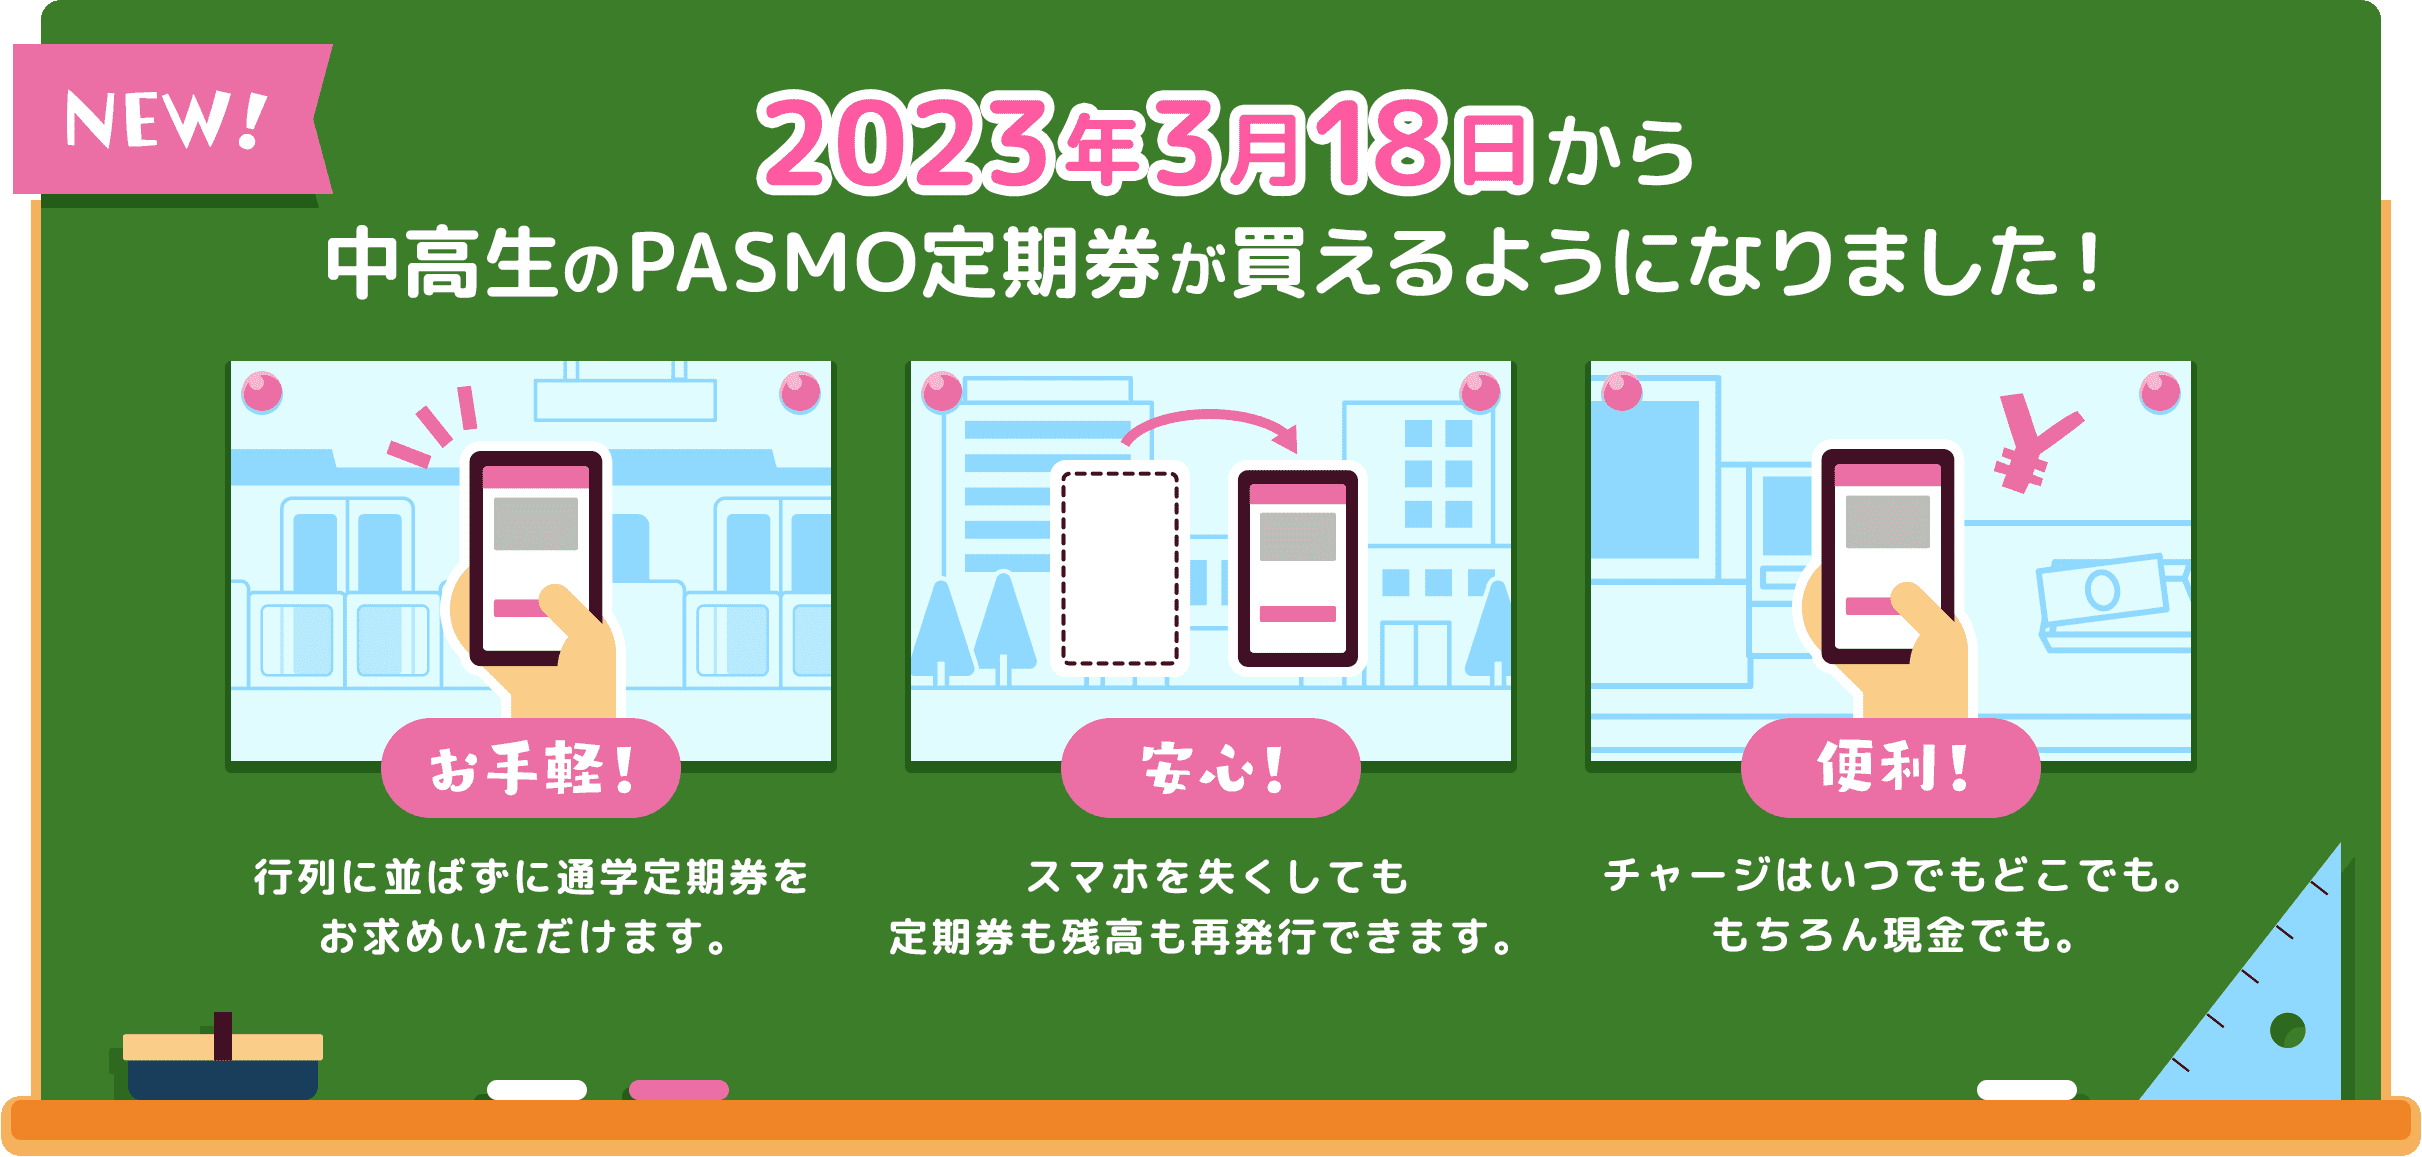 2023年3月18日から中高生のPASMO定期券が買えるようになりました!